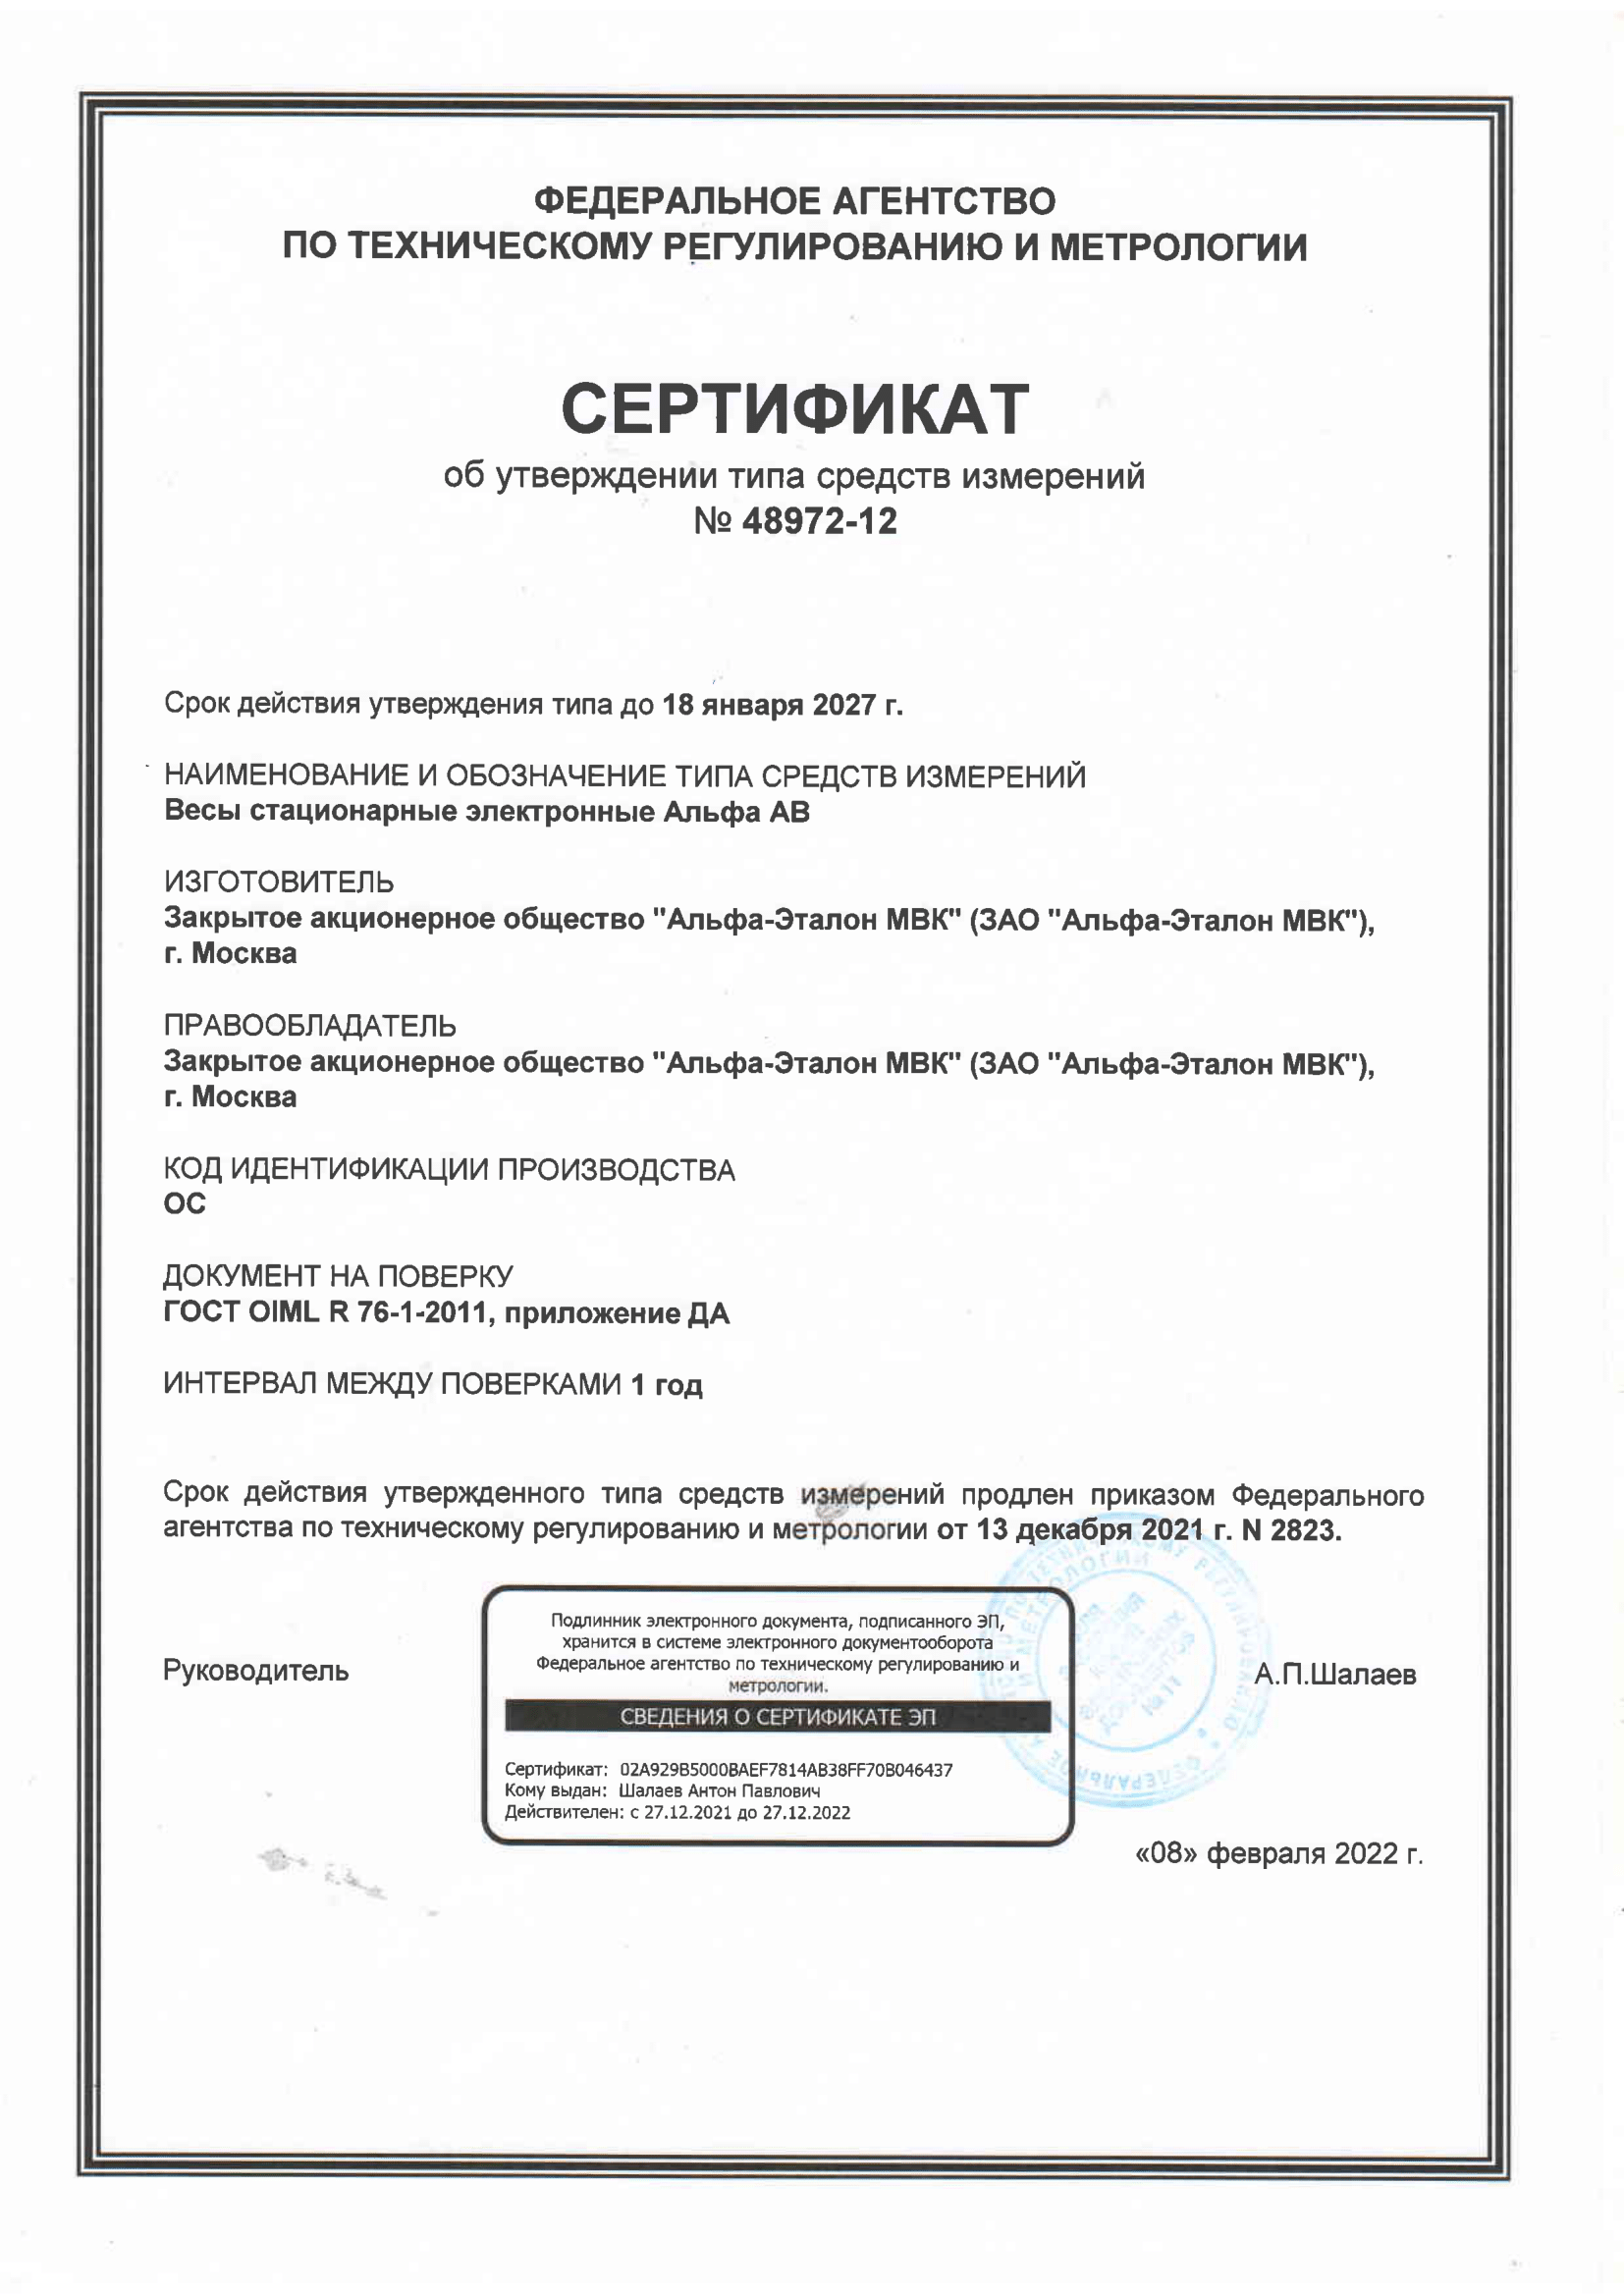 Сертификат об изменнии тиап средств